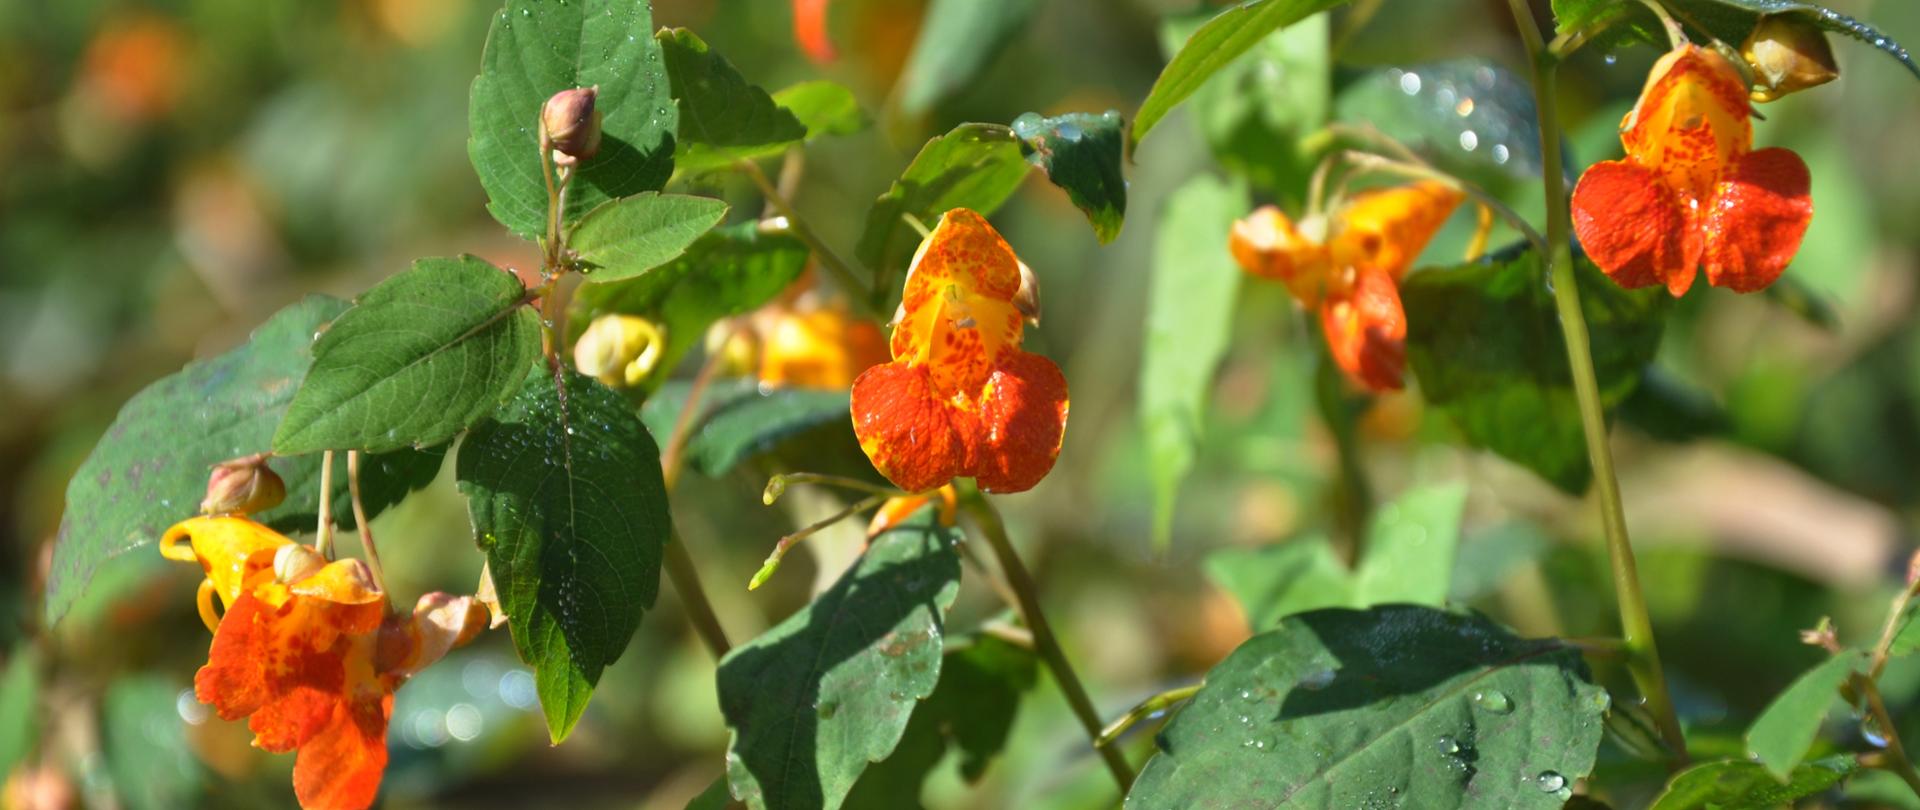 W przybliżeniu pokazane są pomarańczowe kwiaty niecierpka pomarańczowego oraz zielone liście w kształcie jajowatym.